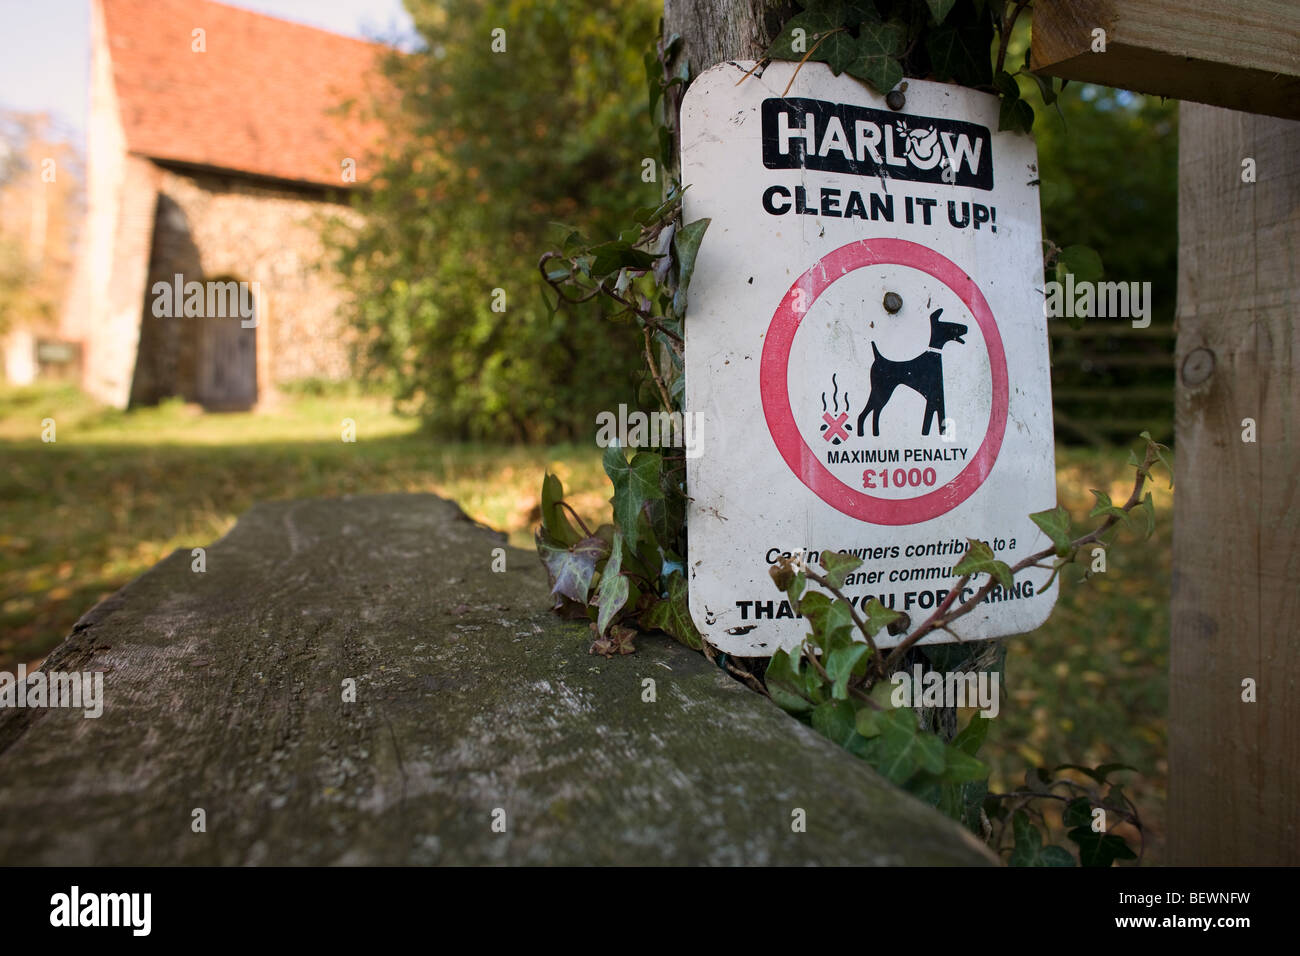 Harlow Rat unterzeichnen an Clean It Up Achtung Hundebesitzer ihre Hunde Durcheinander aufzuräumen oder eine Geldstrafe Stockfoto